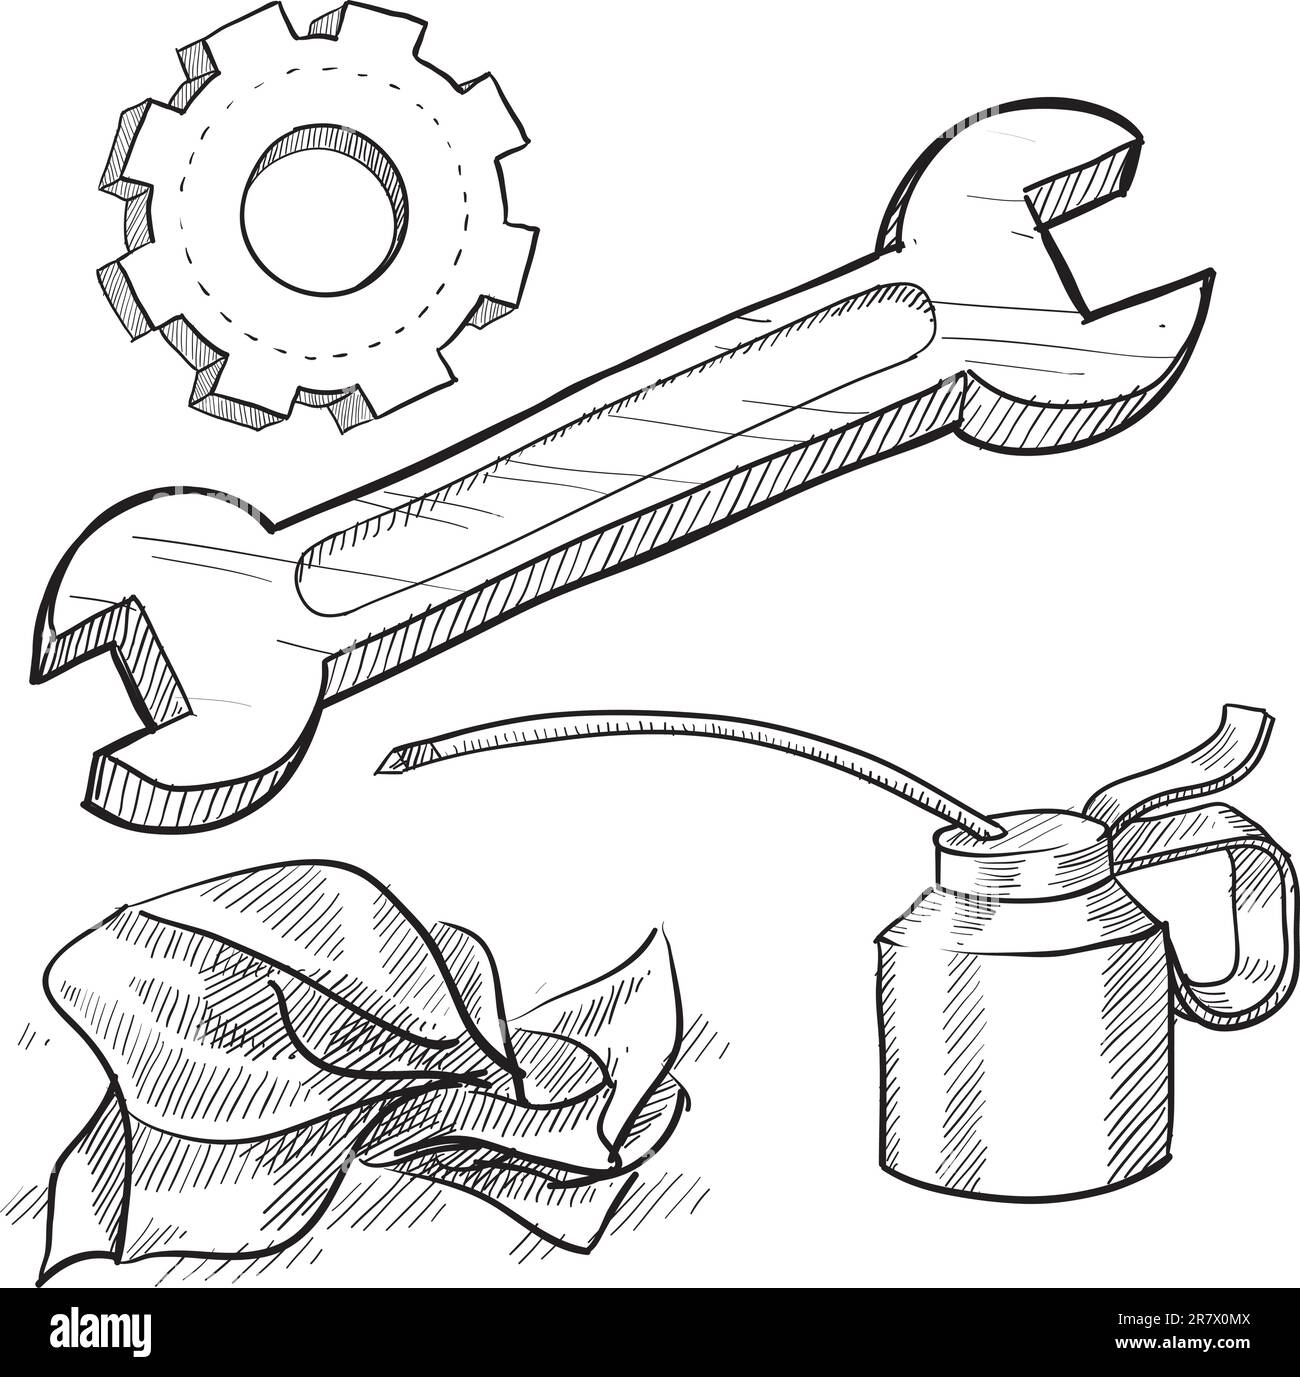 Schaubild eines Mechanikers im Doodle-Stil oder einer Fahrzeugwartung mit Ölkanne, Schraubenschlüssel, Zahnrad und Lappen Stock Vektor